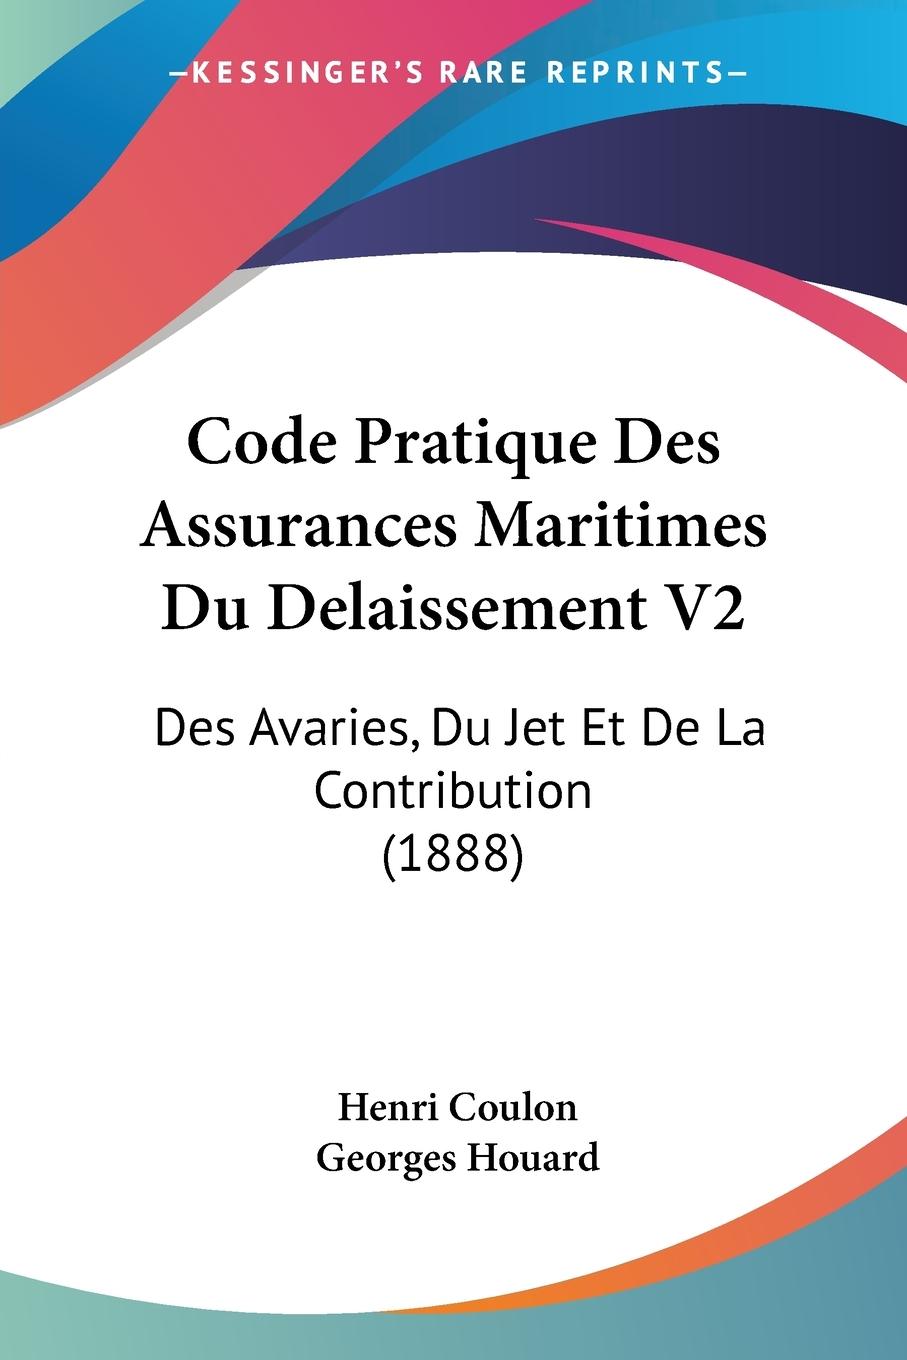 Code Pratique Des Assurances Maritimes Du Delaissement V2 - Coulon, Henri Houard, Georges